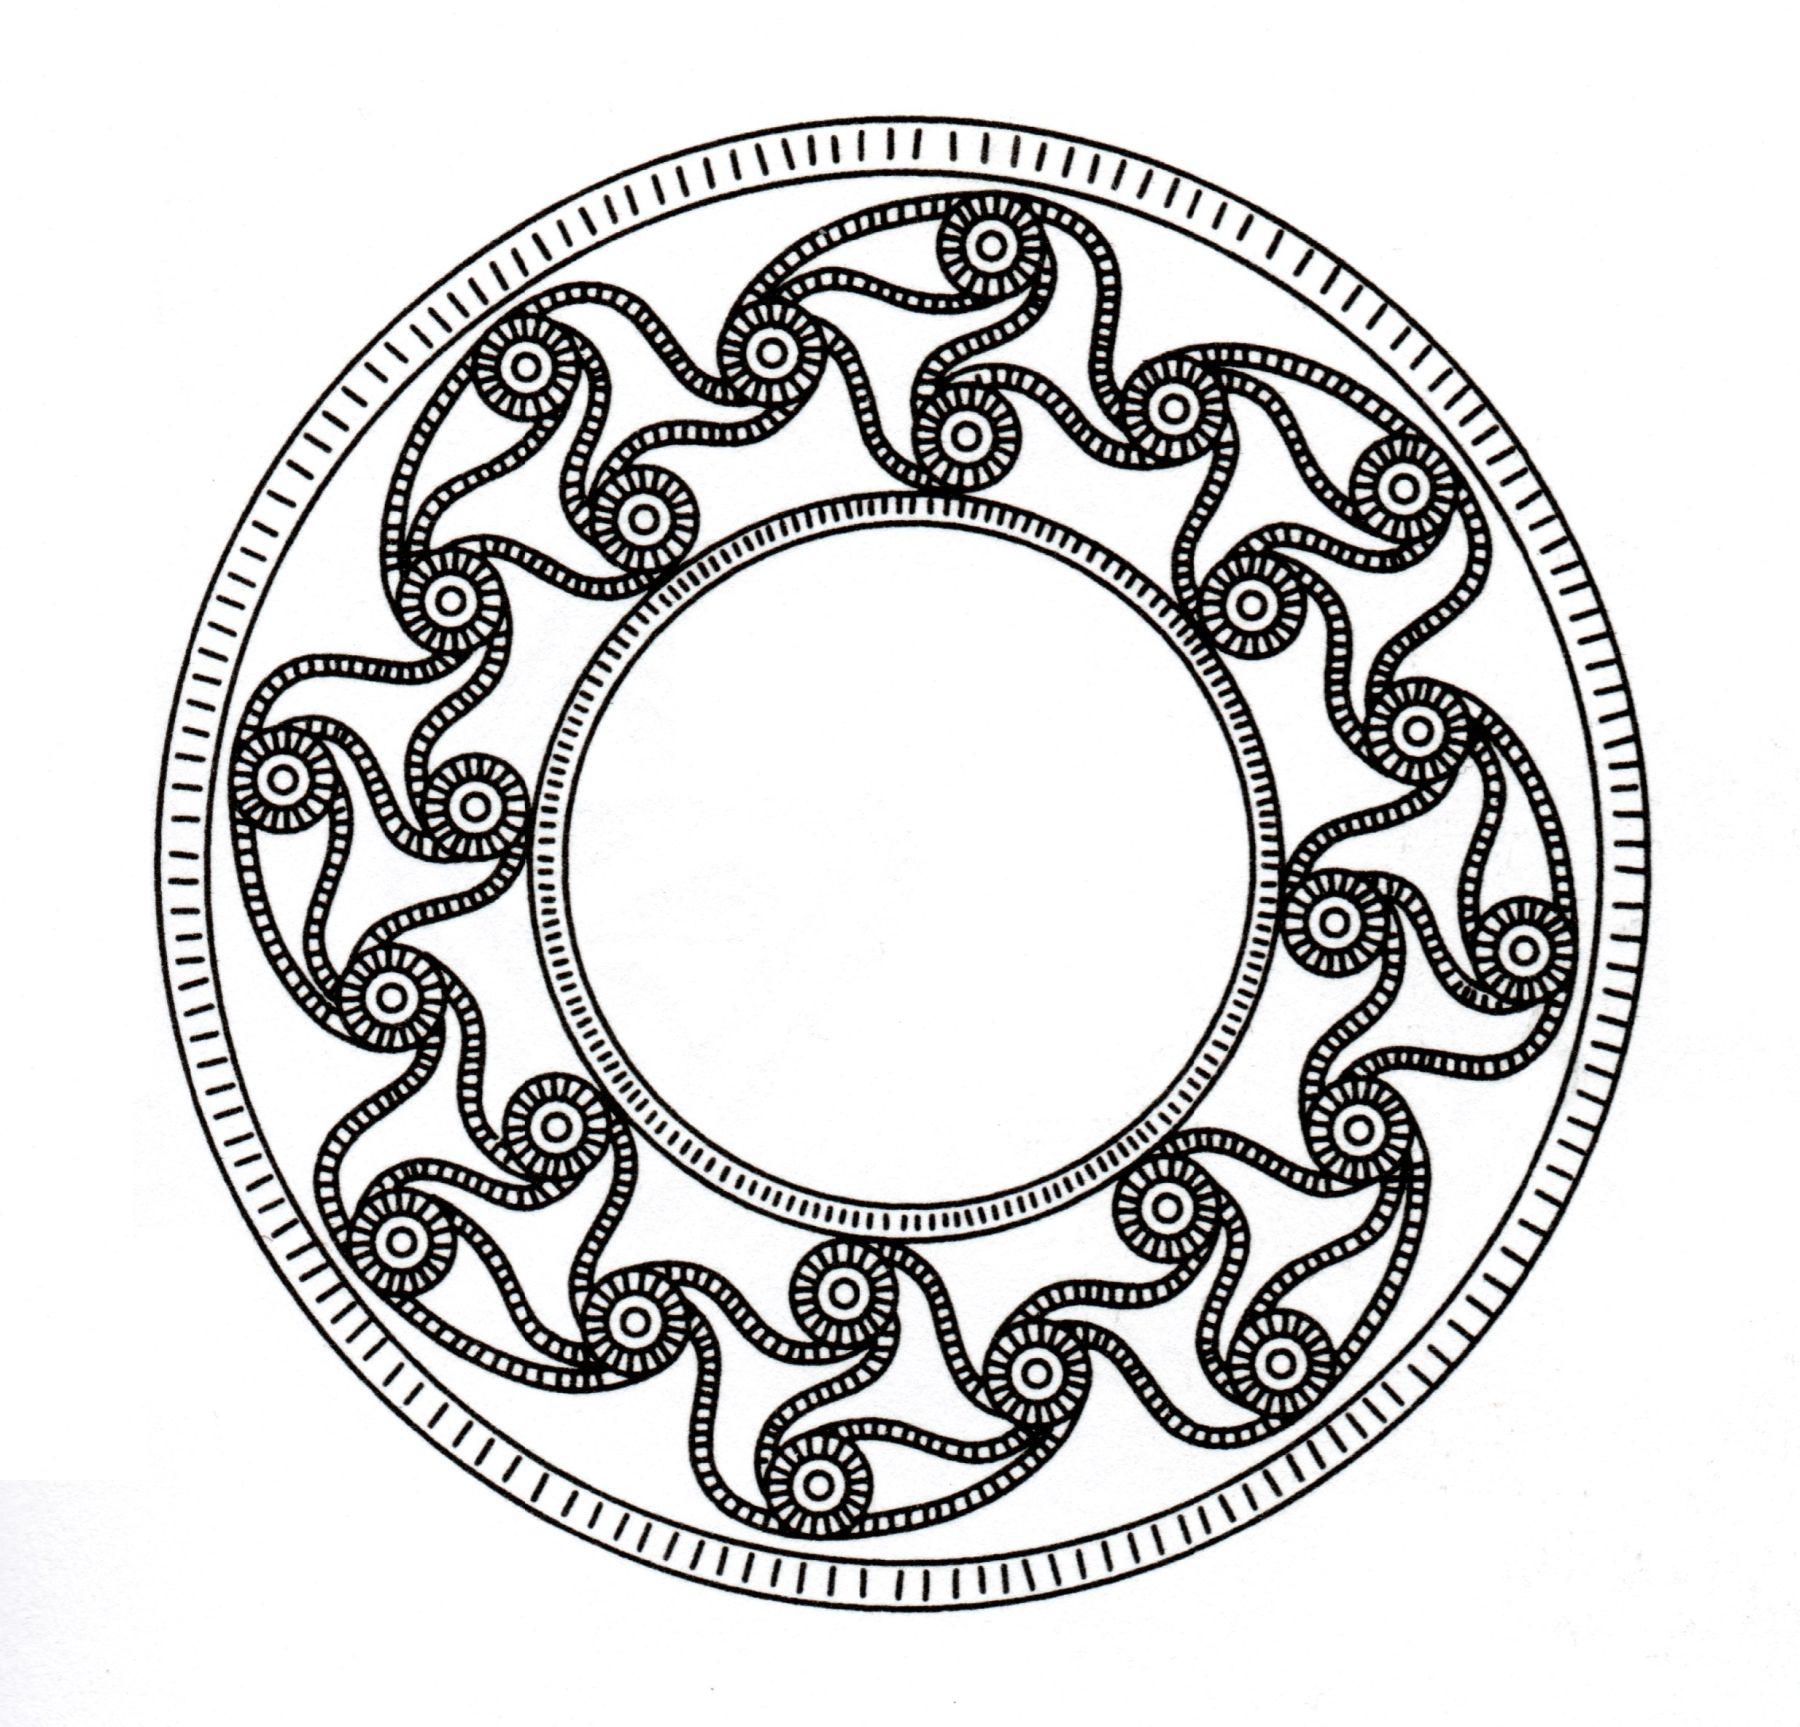 Dibujo de arte celta parecido a un mandala